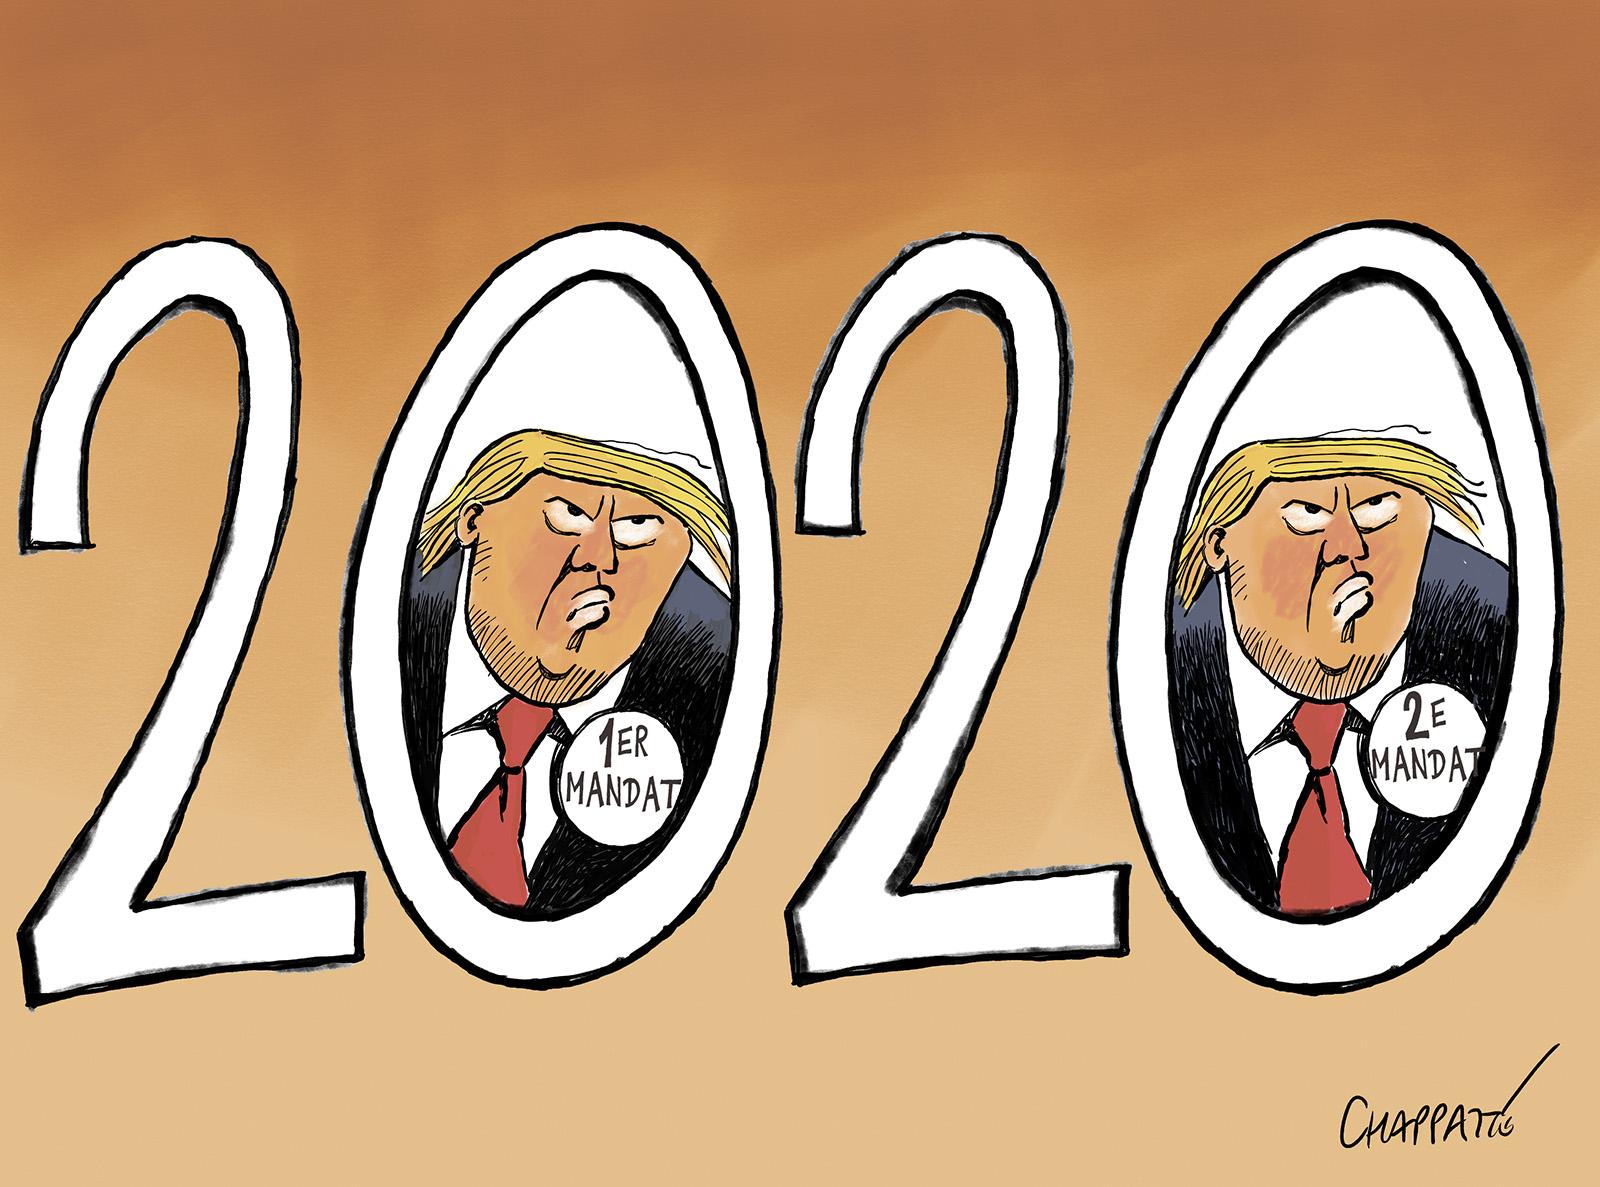 Voici 2020!